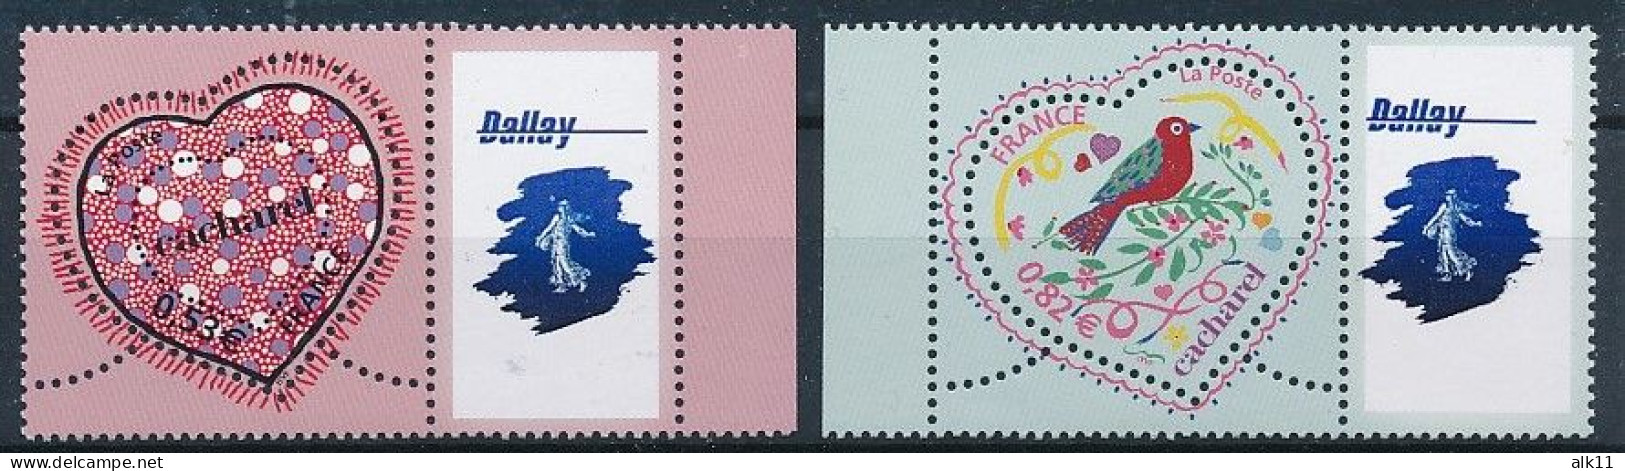 France 2005 - 3747Aa Et 3748Aa Deux Timbres Personnalisés Logo Dallay Saint-Valentin - Neuf - Ungebraucht